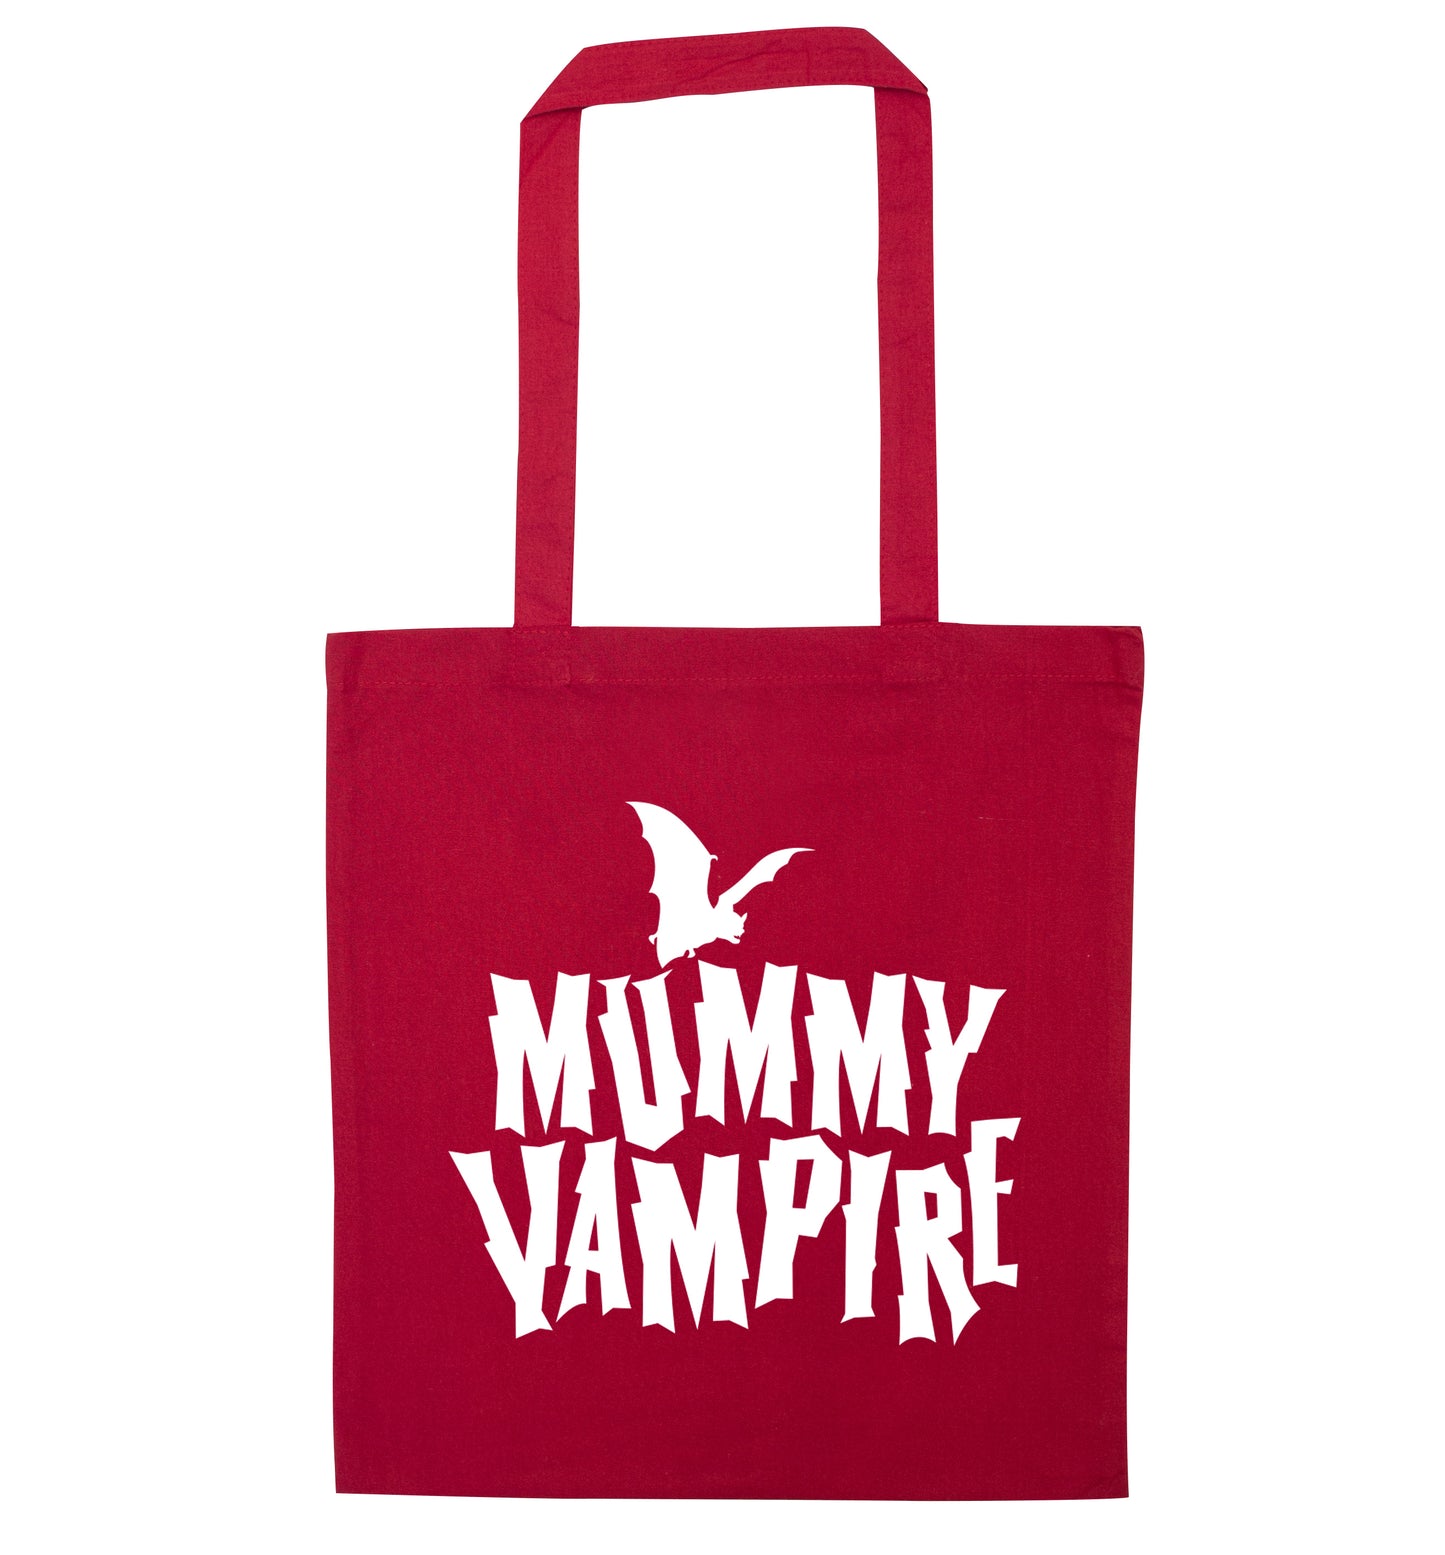 Mummy vampire red tote bag